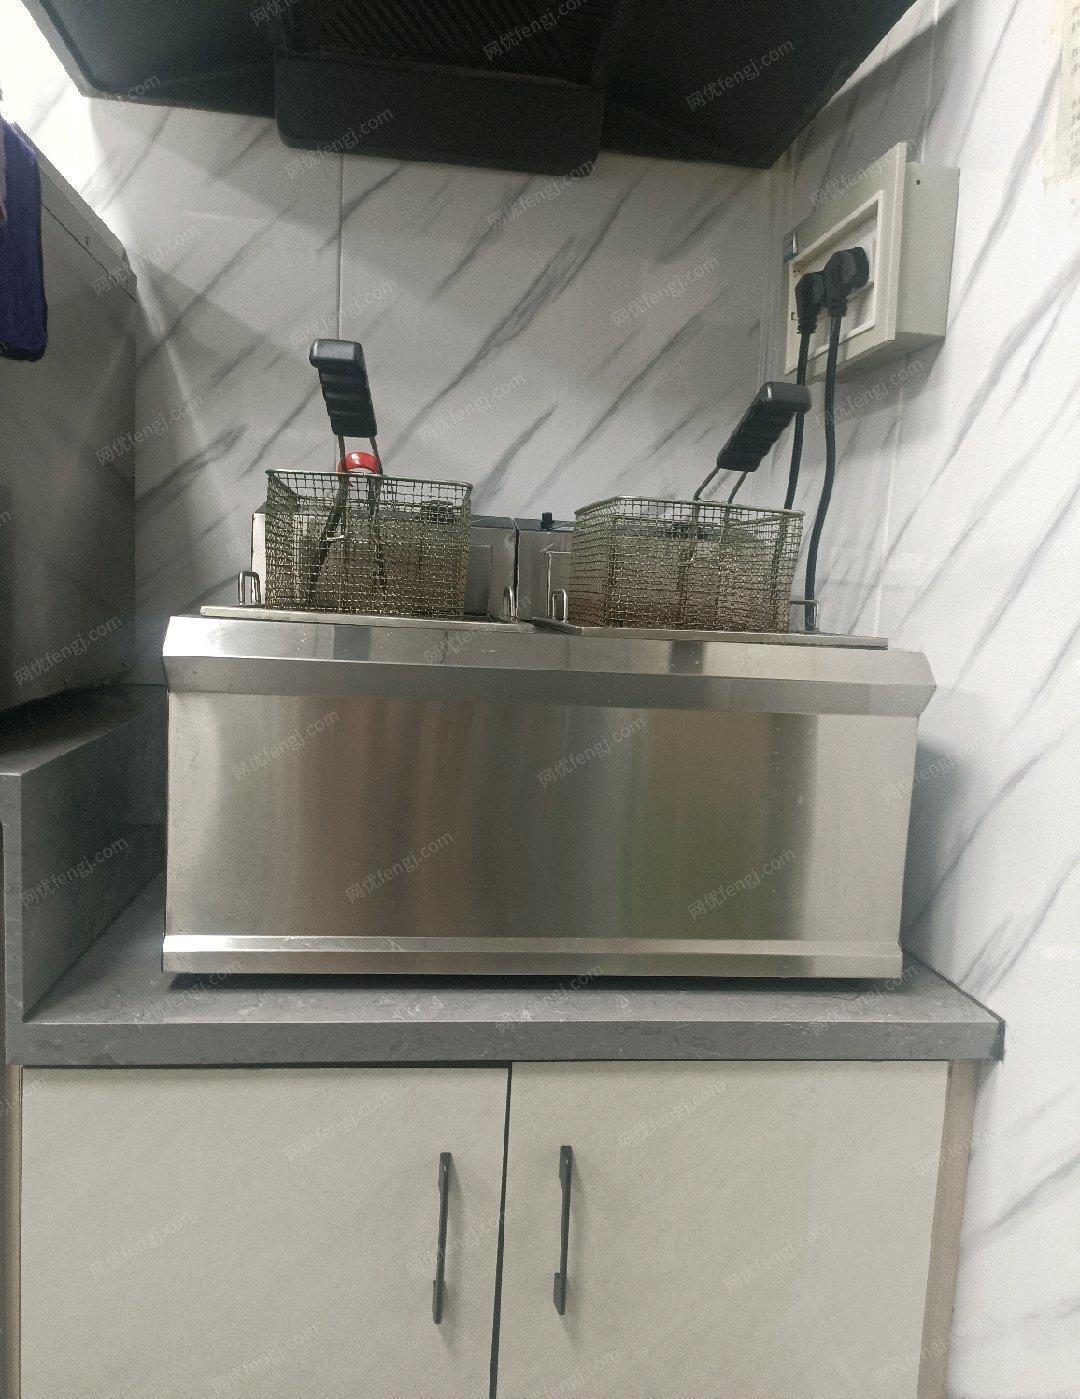 新疆喀什奶茶汉堡设备转让，冰激凌机（九成新），制冰机（大型号的），水吧台（订制两米长的），四开门大冰箱，烤箱带蒸汽六层的，油炸锅，蒸汽开水机，封口机，果糖机。汉堡机